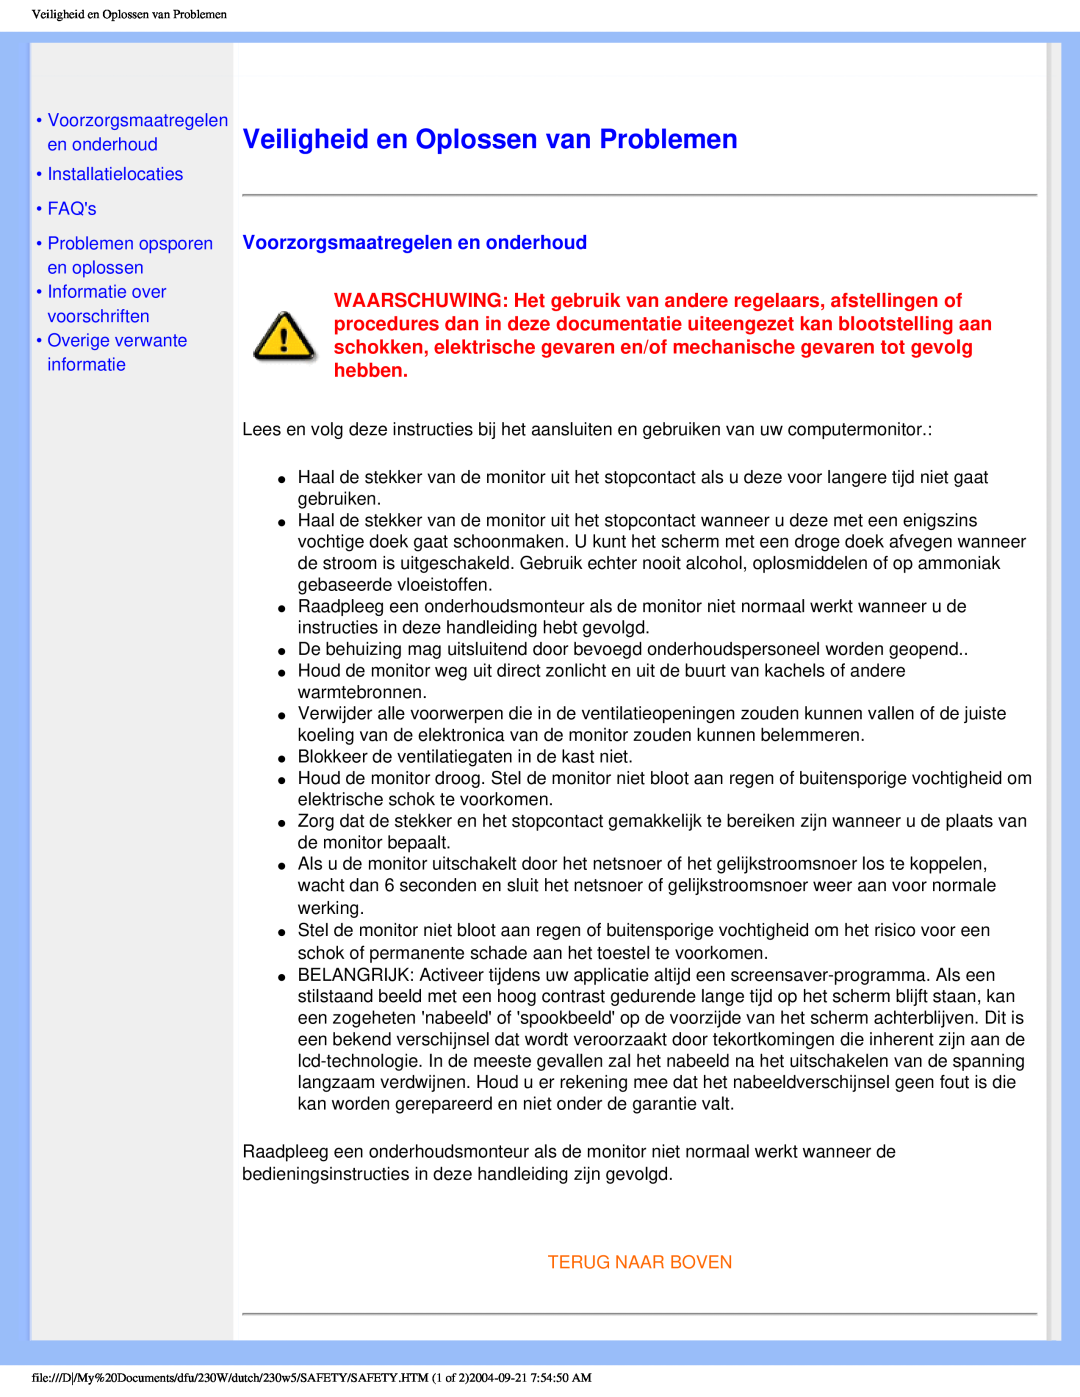 Philips 230W user manual Veiligheid en Oplossen van Problemen, Voorzorgsmaatregelen en onderhoud, Installatielocaties FAQs 